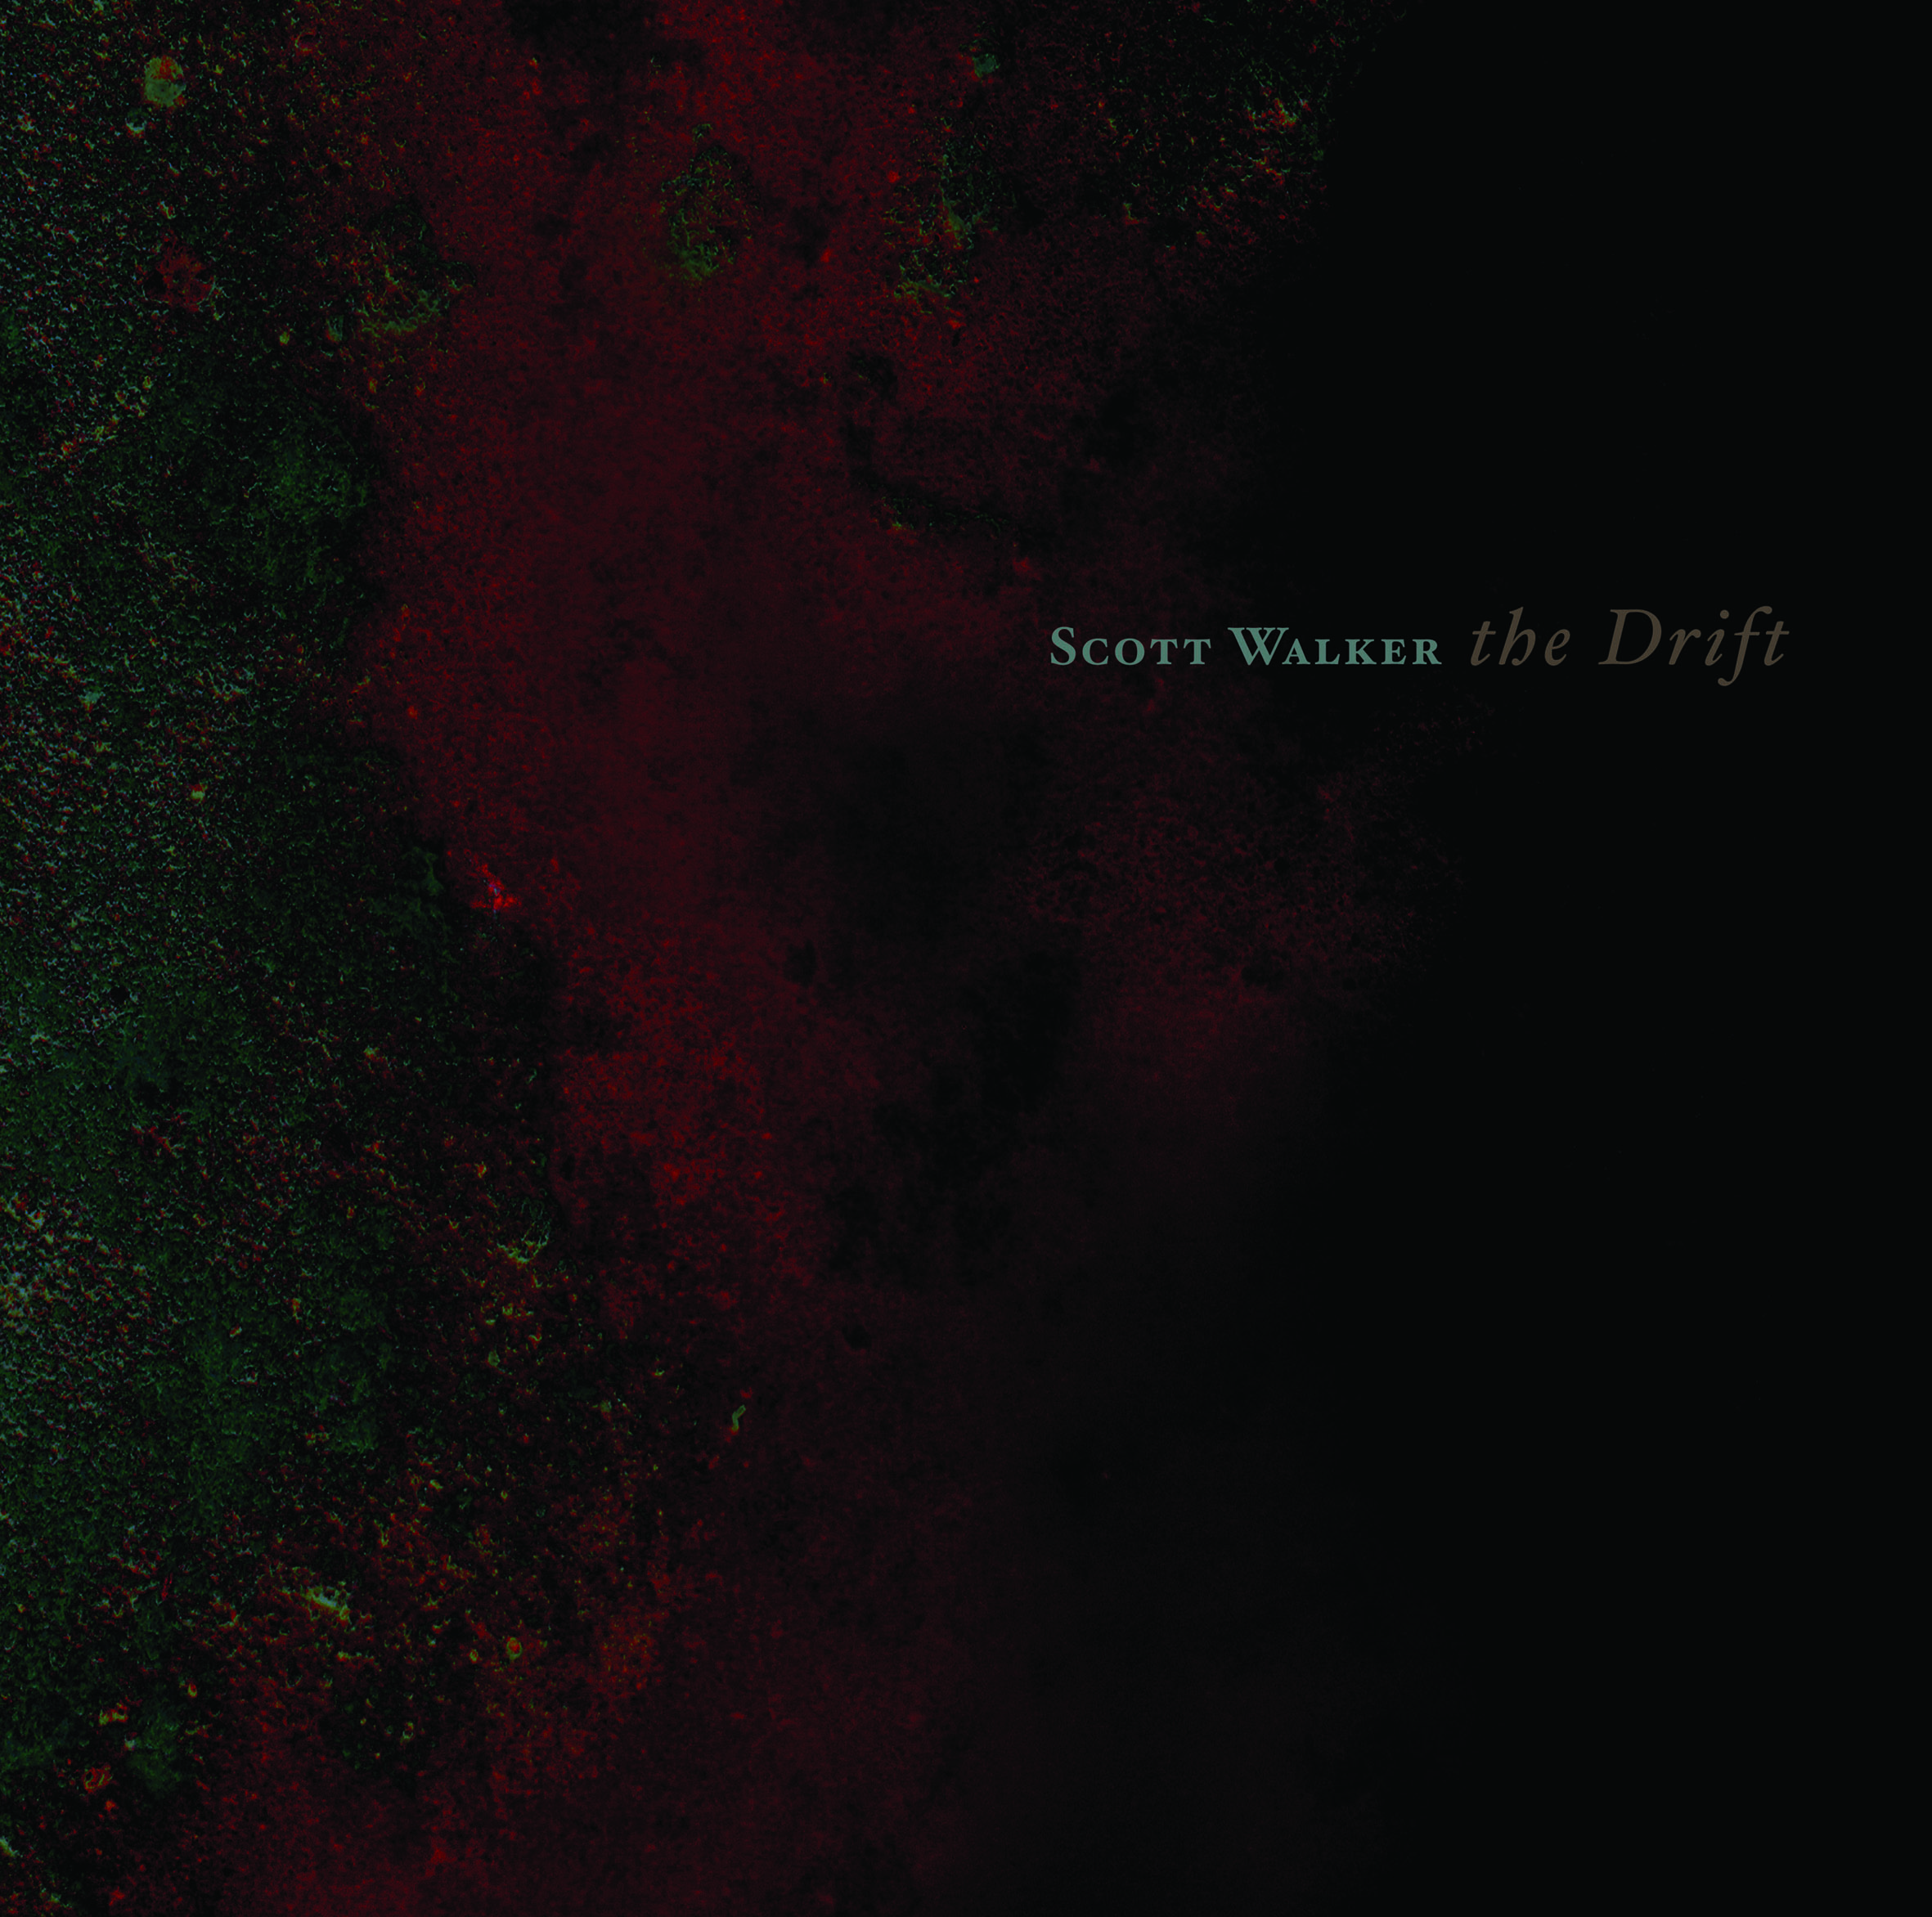 Scott Walker - The drift